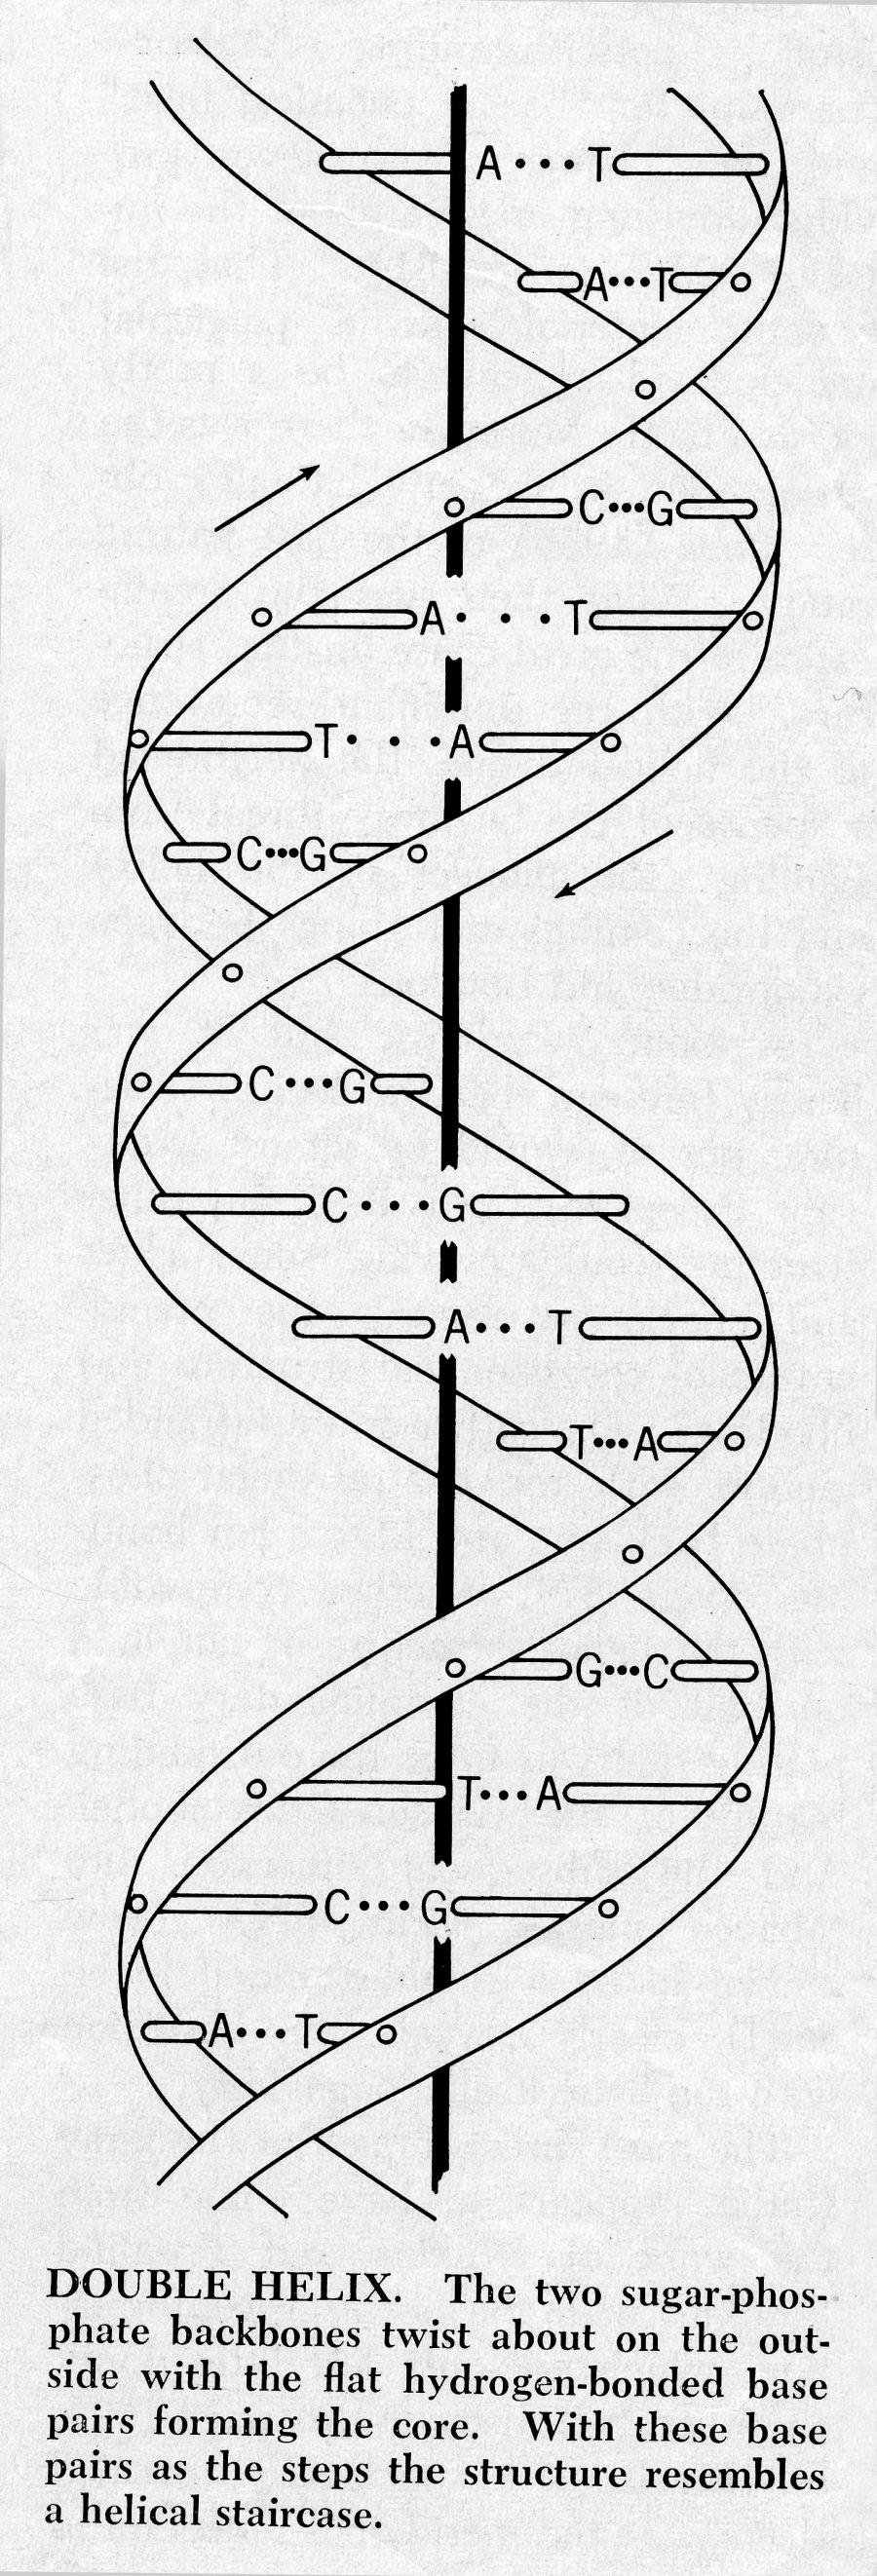 LA SCOPERTA DEL DNA UN PO DI STORIA S 1953- James Watson e Francis Crick sviluppano il modello Doppia